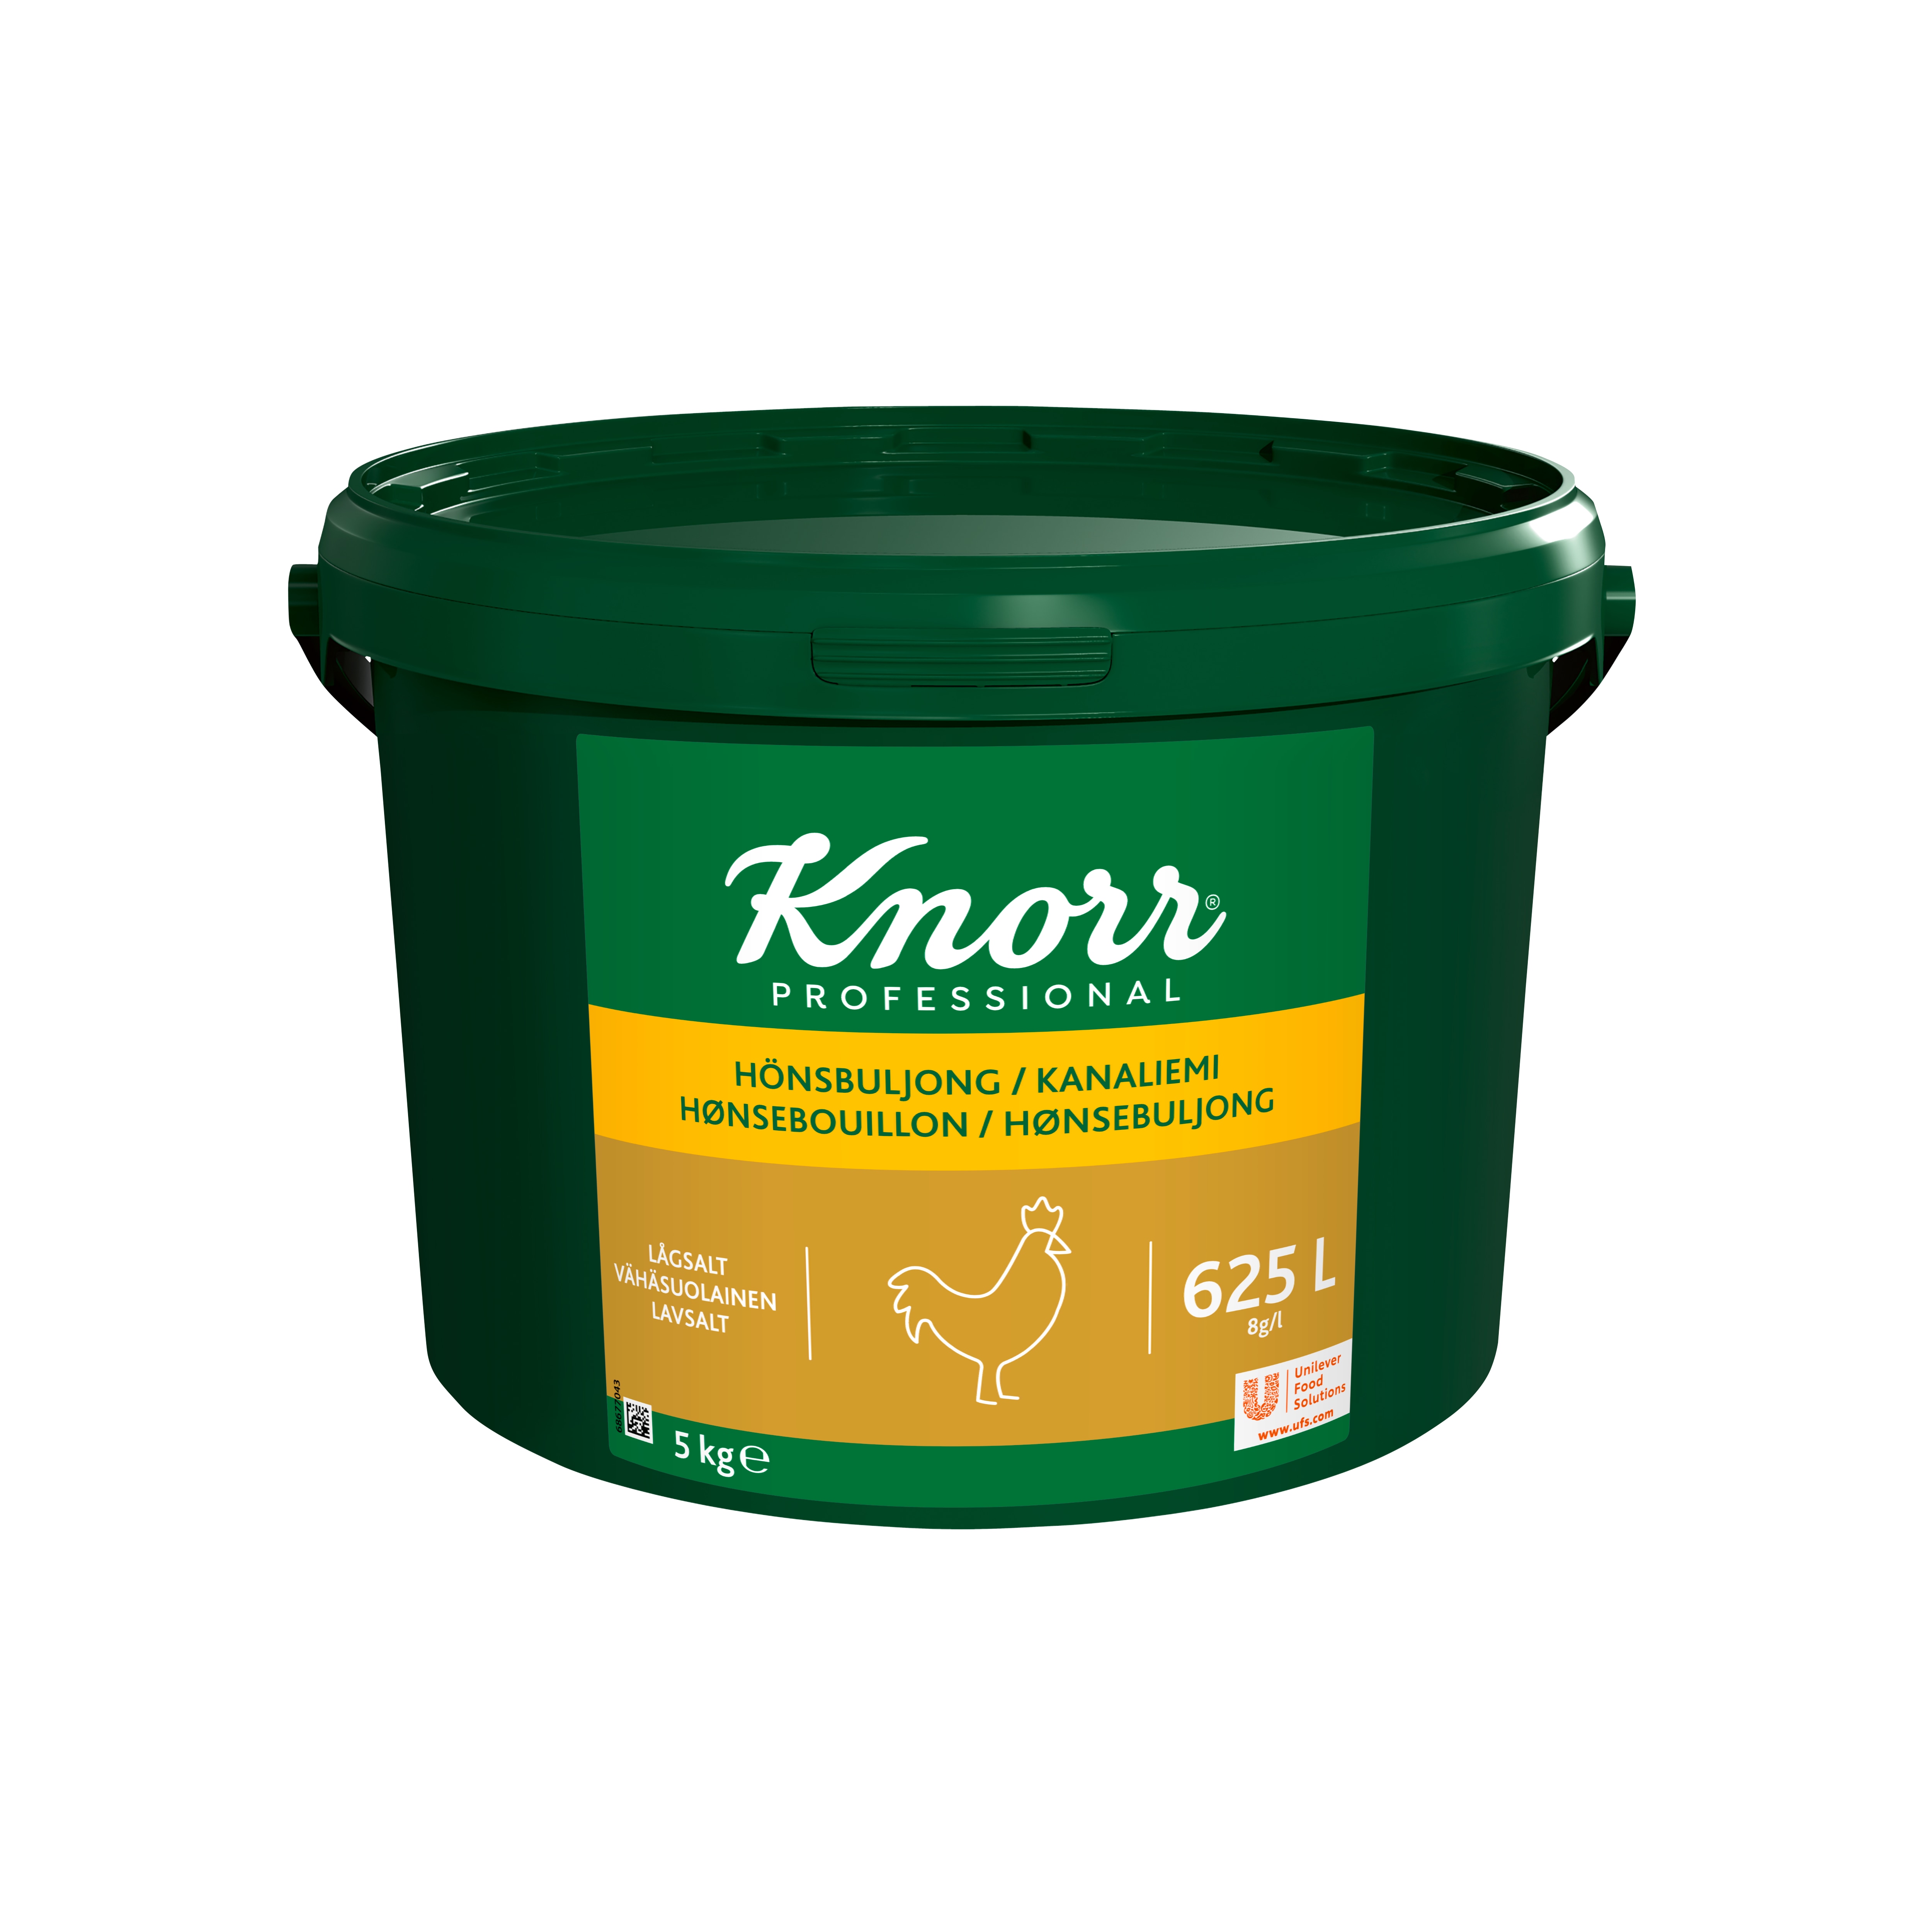 Knorr Hönsbuljong lågsalt 1x5kg - 